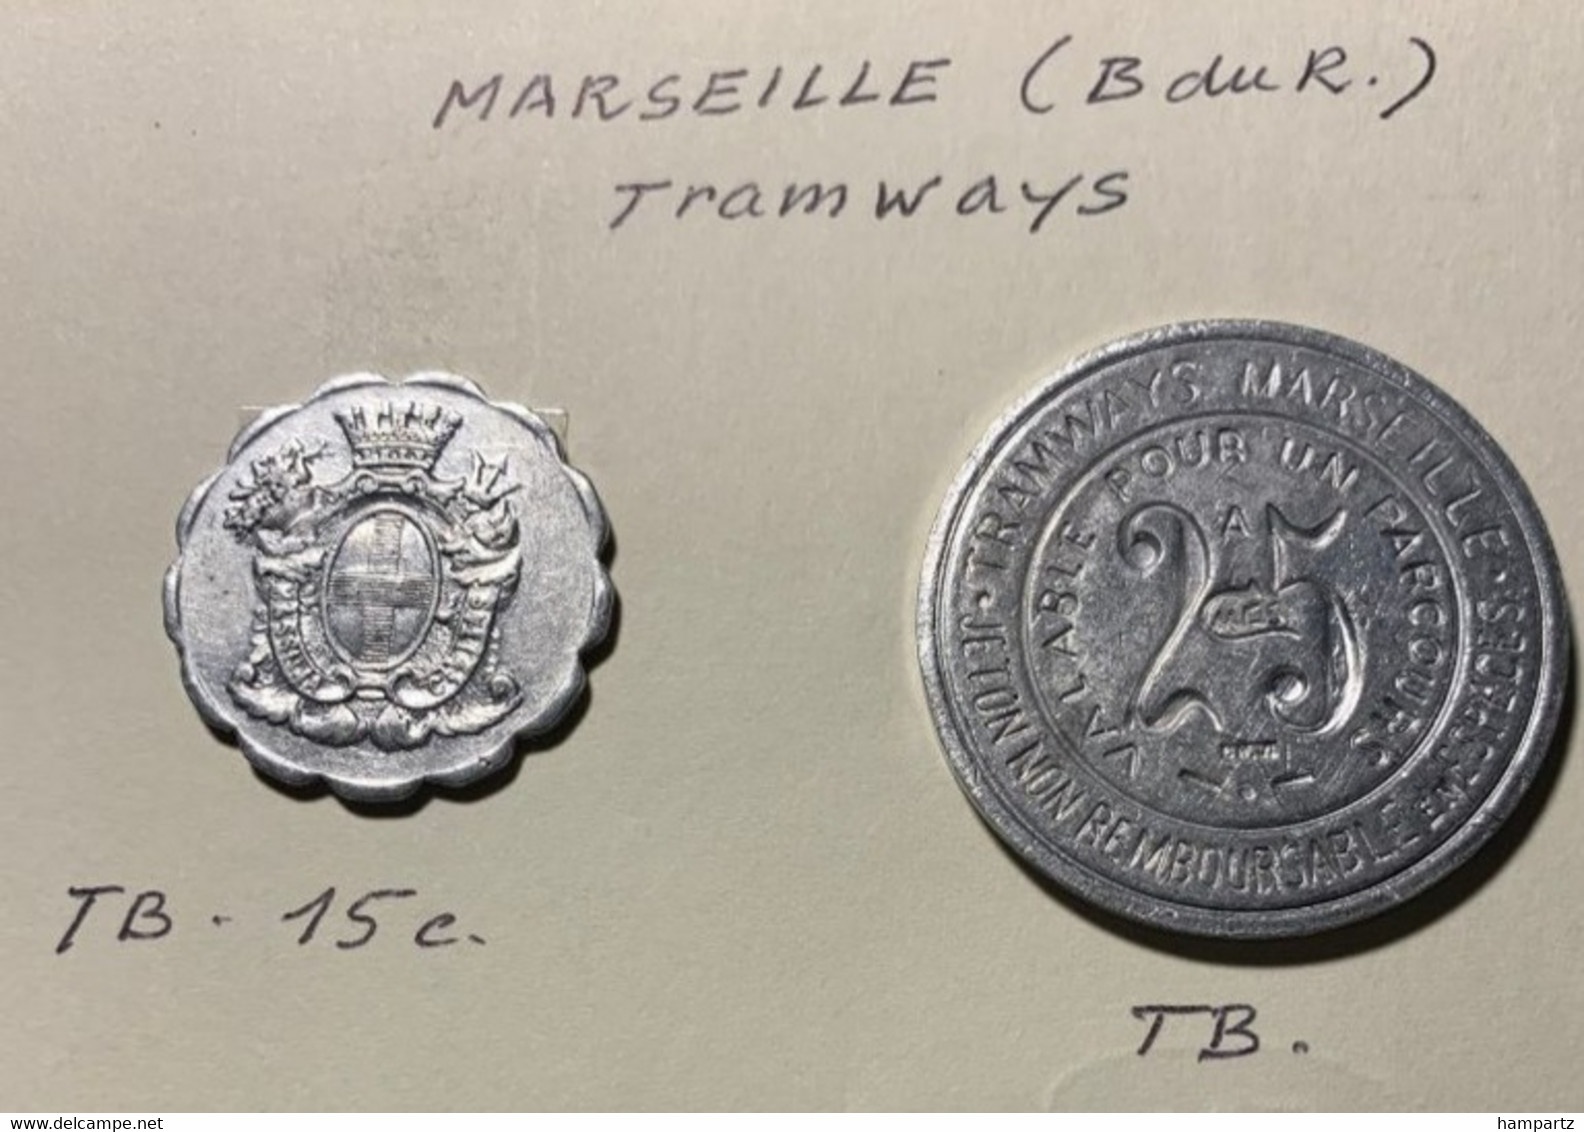 Monnaie De Nécessité - MARSEILLE (B Du R) Tramways - - Bonos